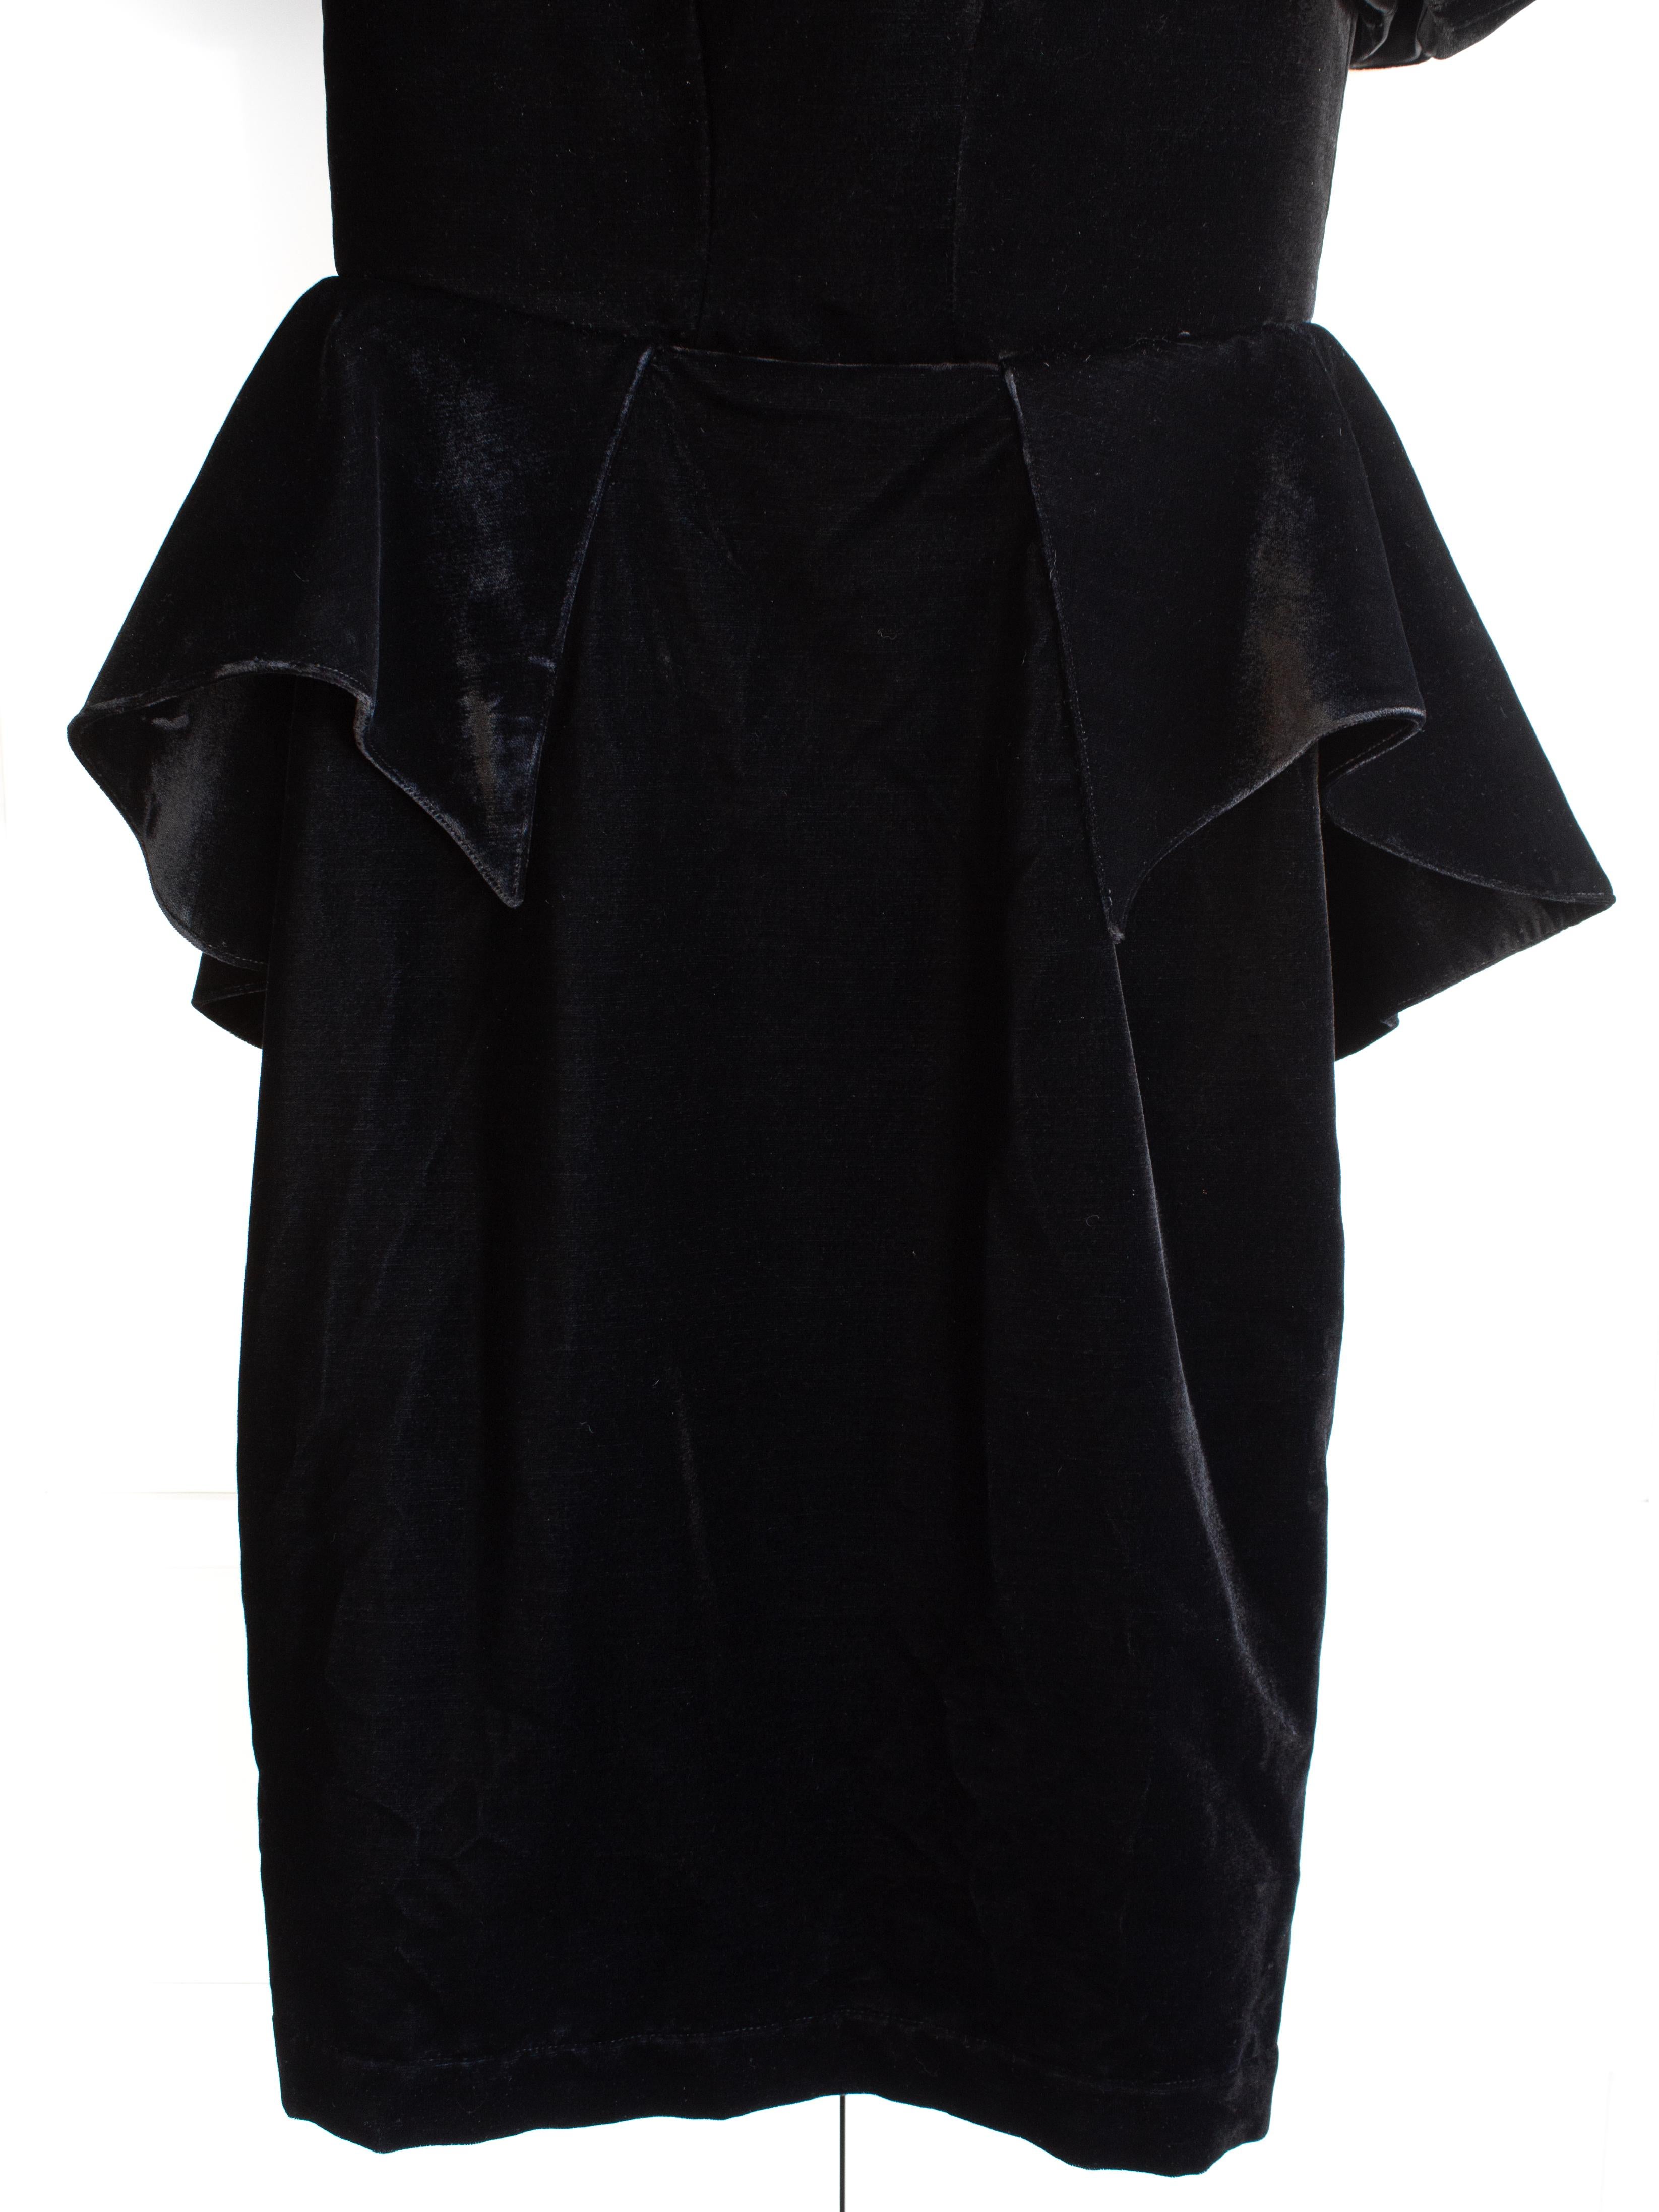 Iconic Thierry Mugler Vintage 1981 Black Velvet Peplum Vampire Dress For Sale 6